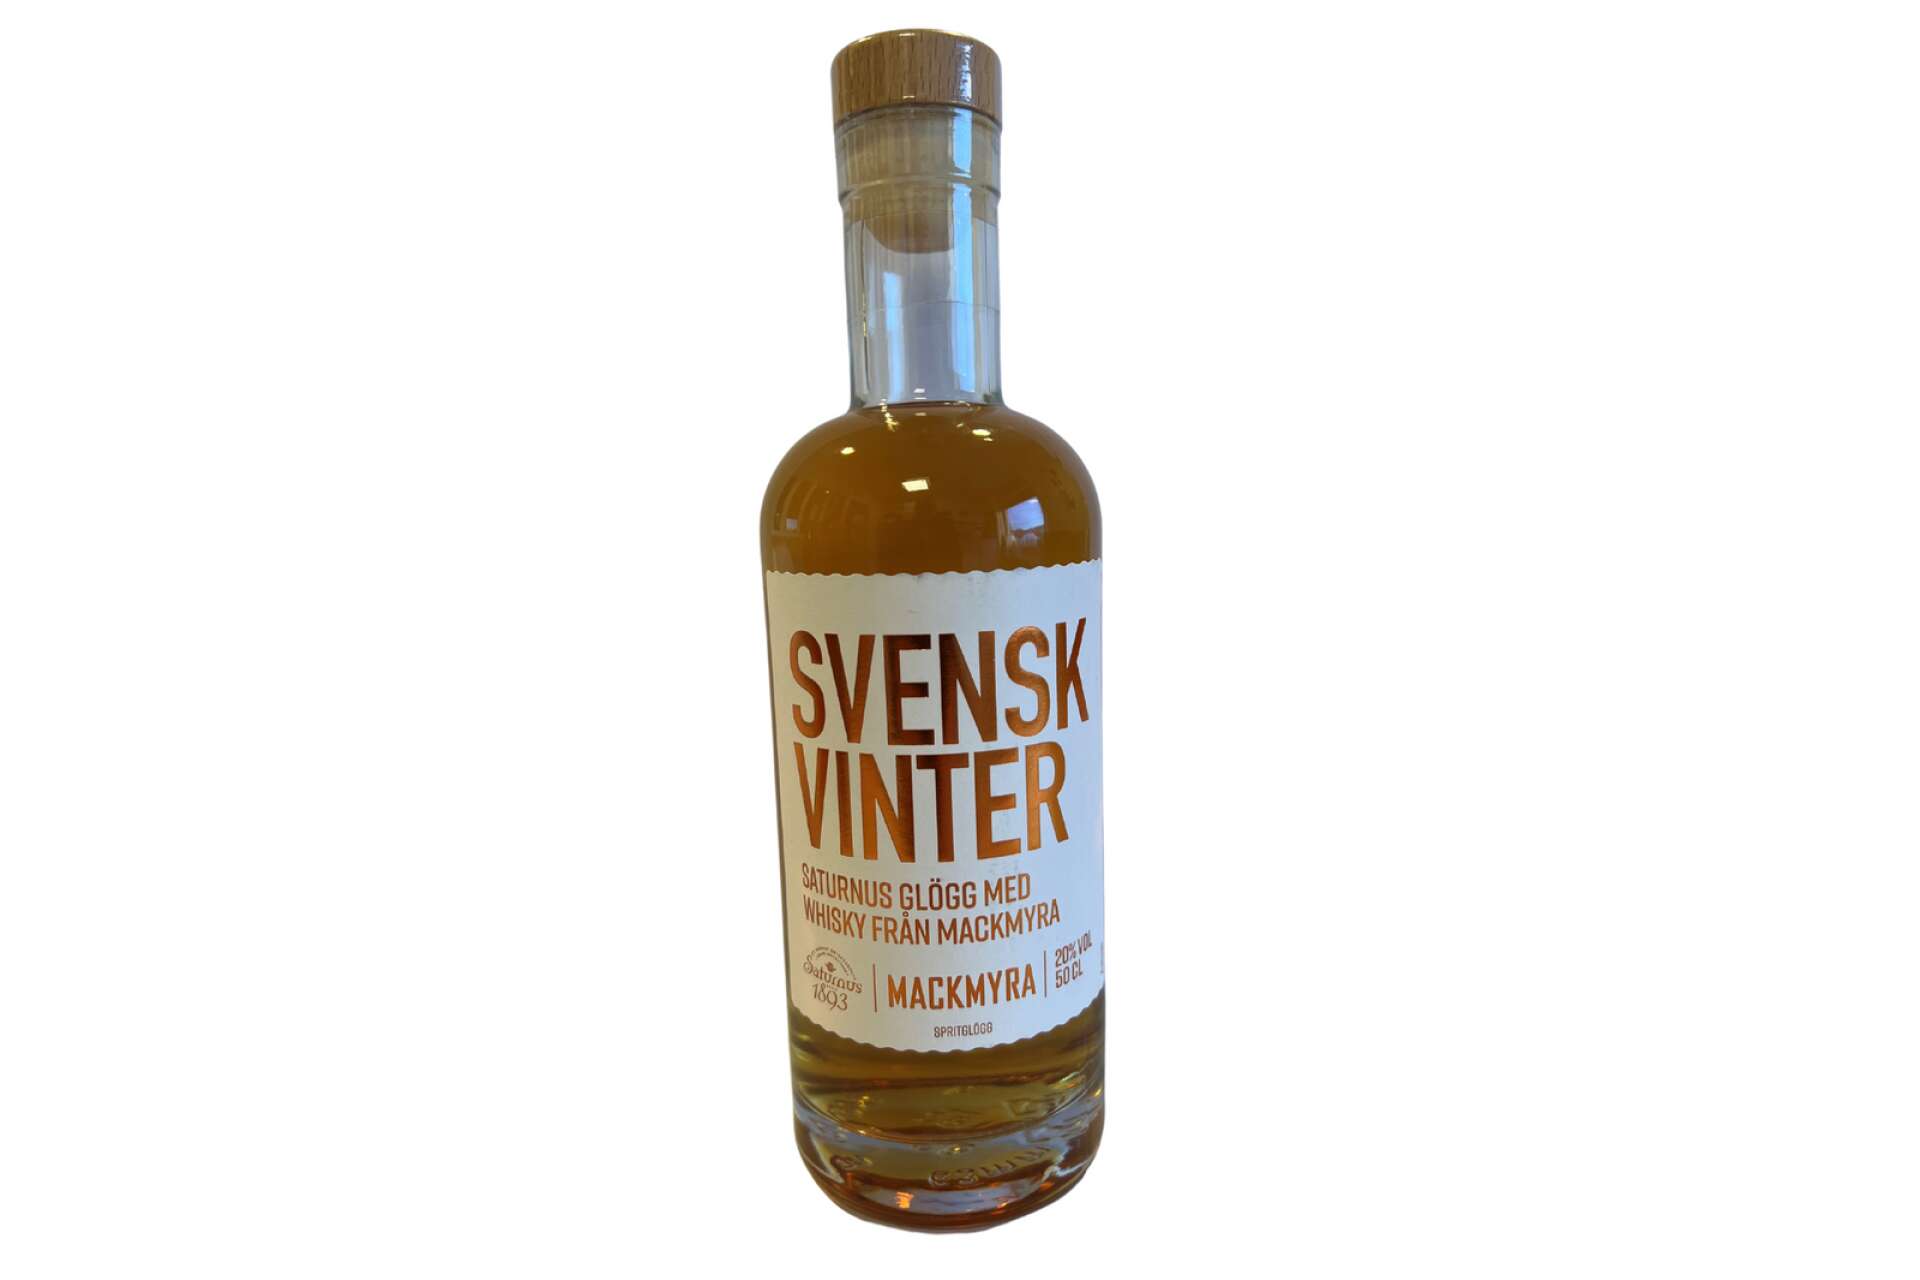 Svensk Vinter från Saturnus, glögg med whisky från Mackmyra.